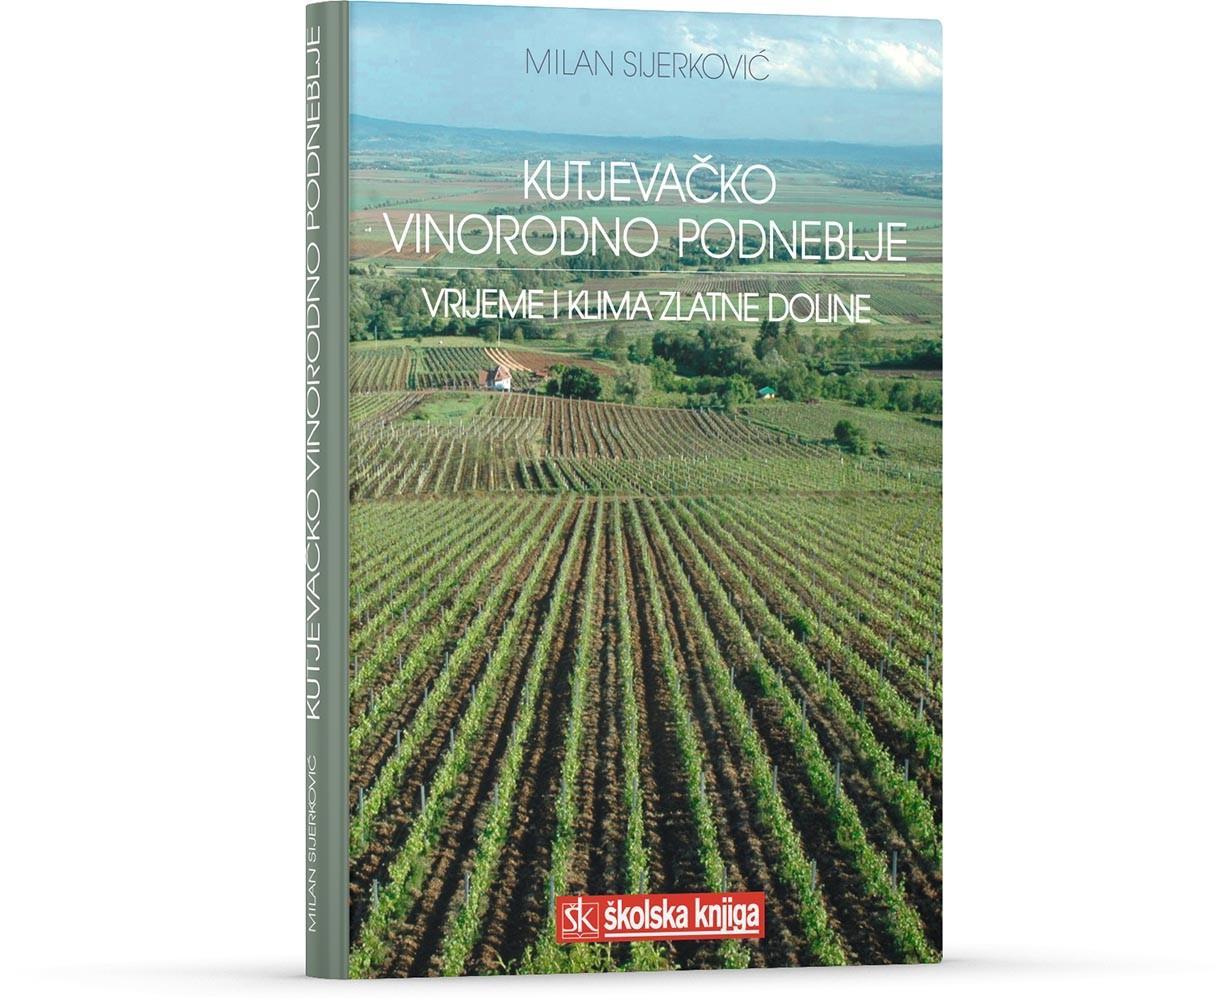 Kutjevačko vinorodno podneblje - Vrijeme i klima Zlatne doline